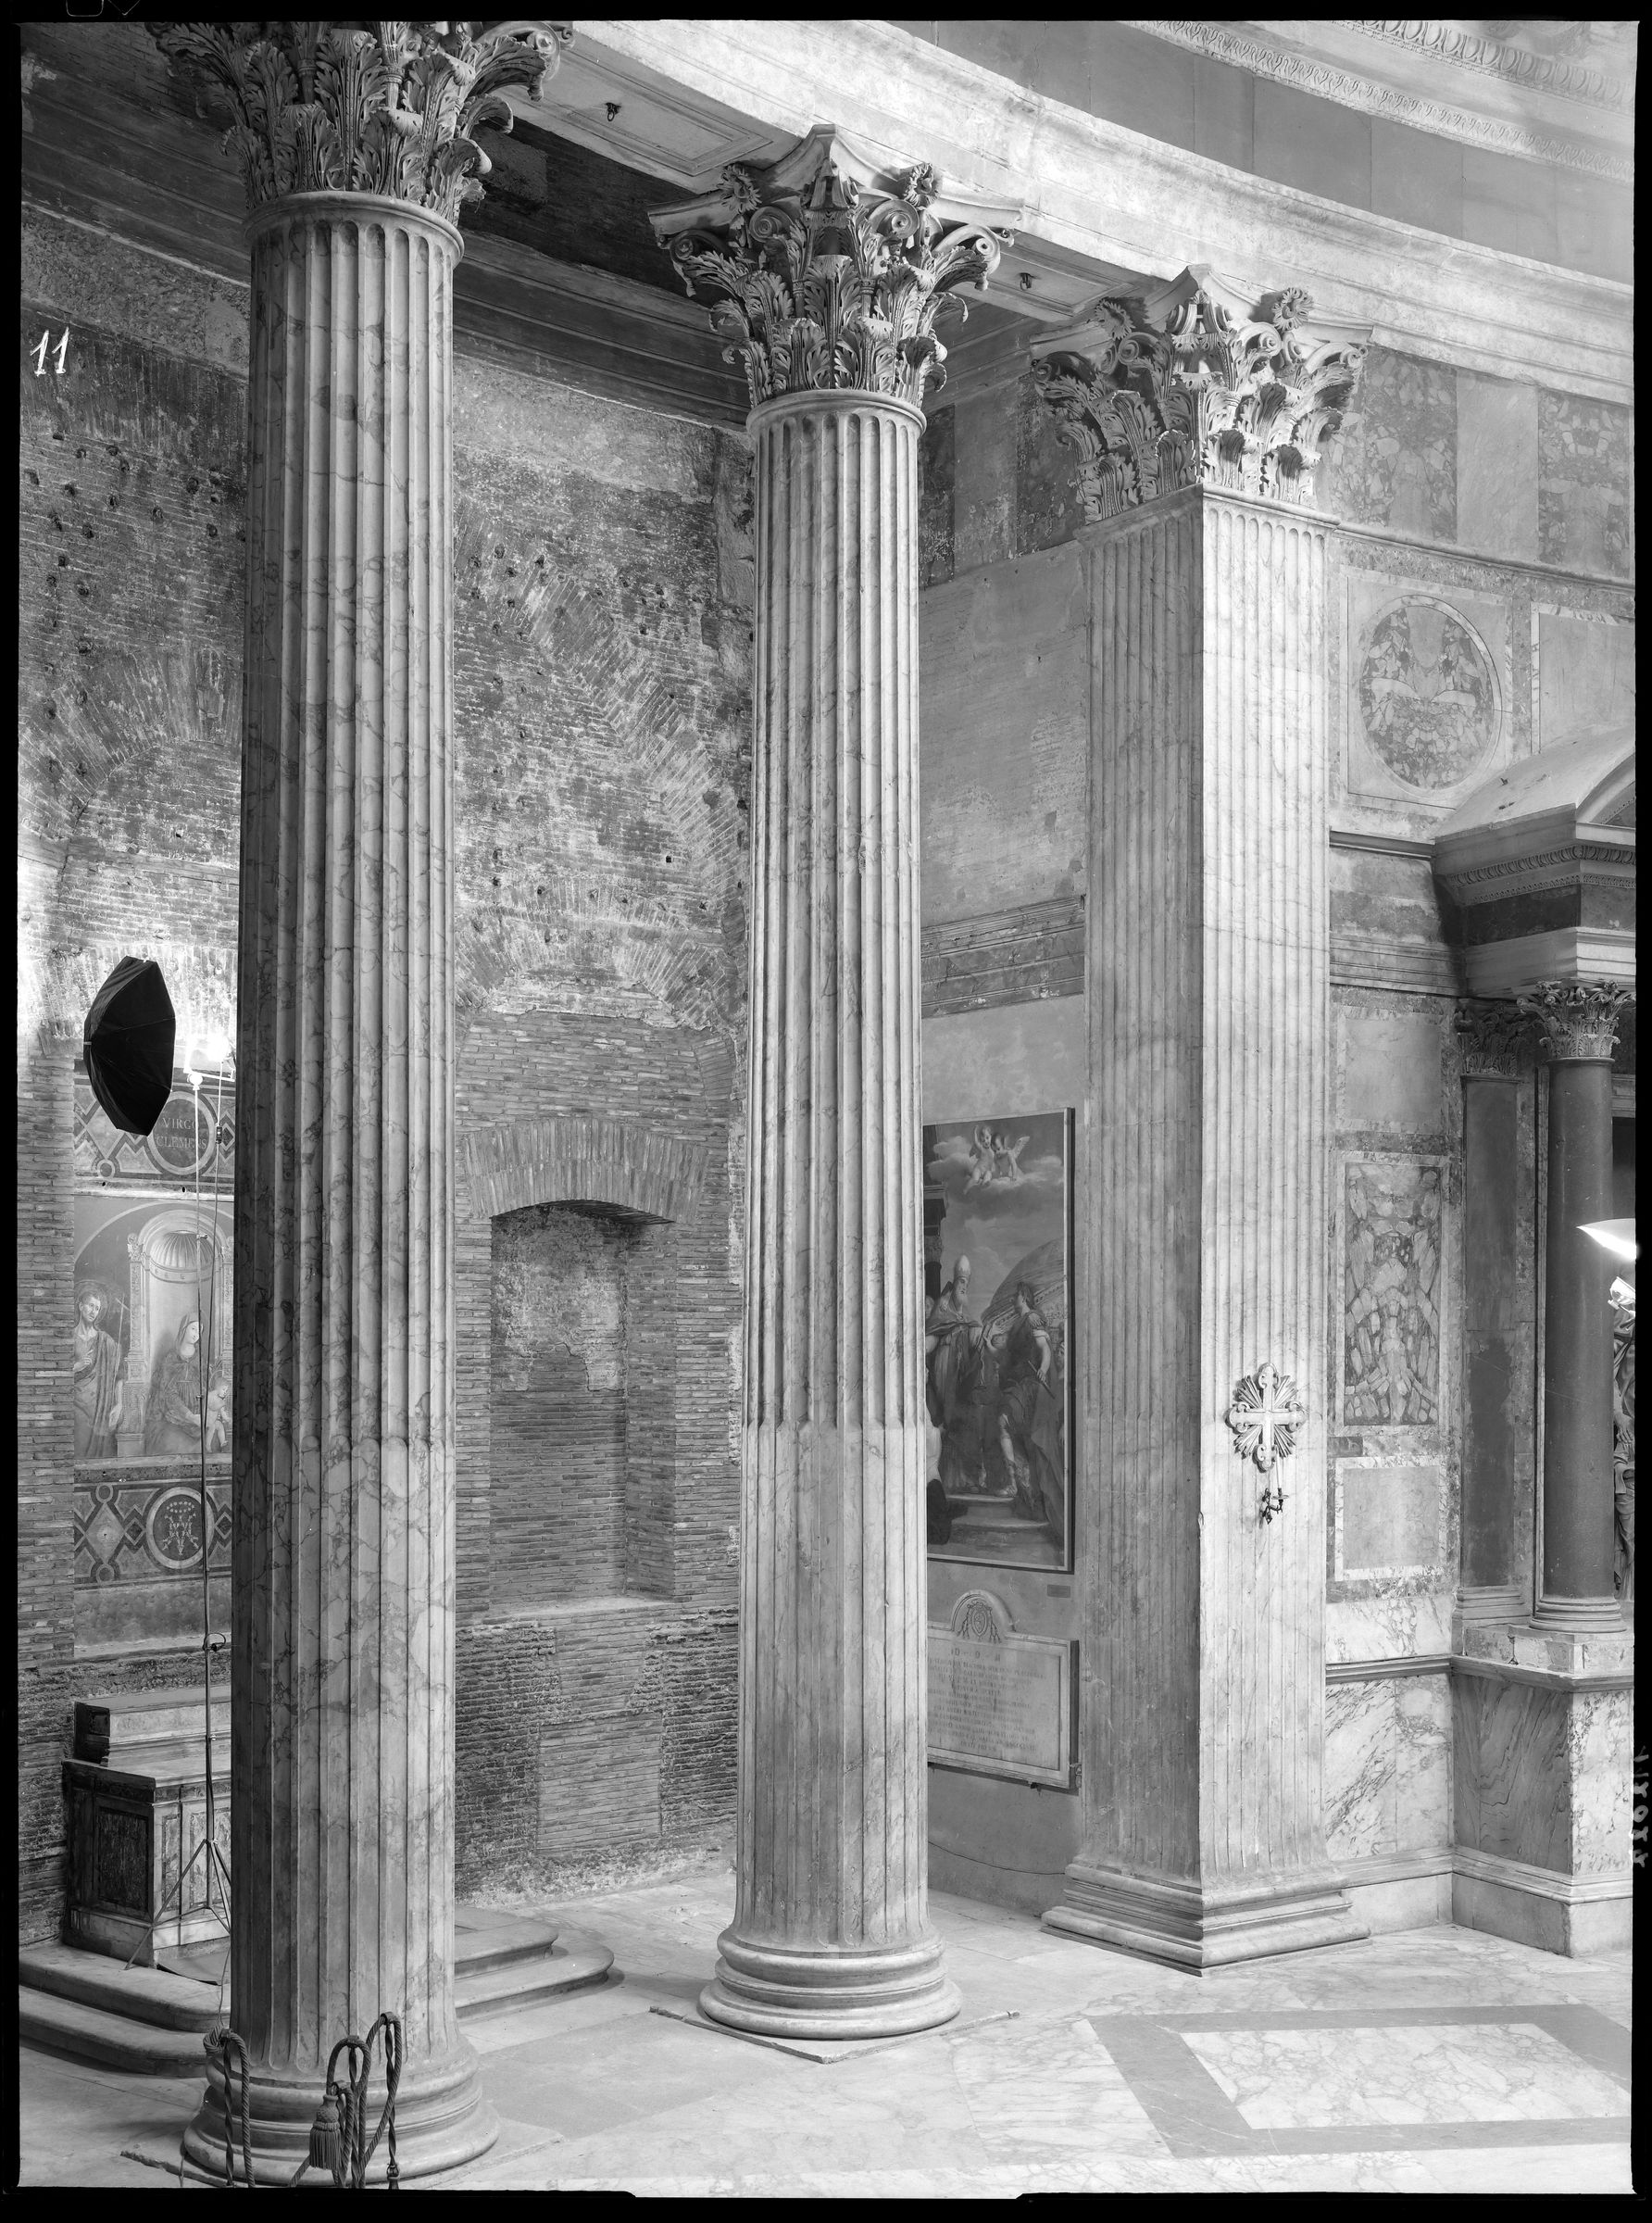 Fotografo non identificato, Roma - Pantheon,1951-2000, 18x24 cm, E112027